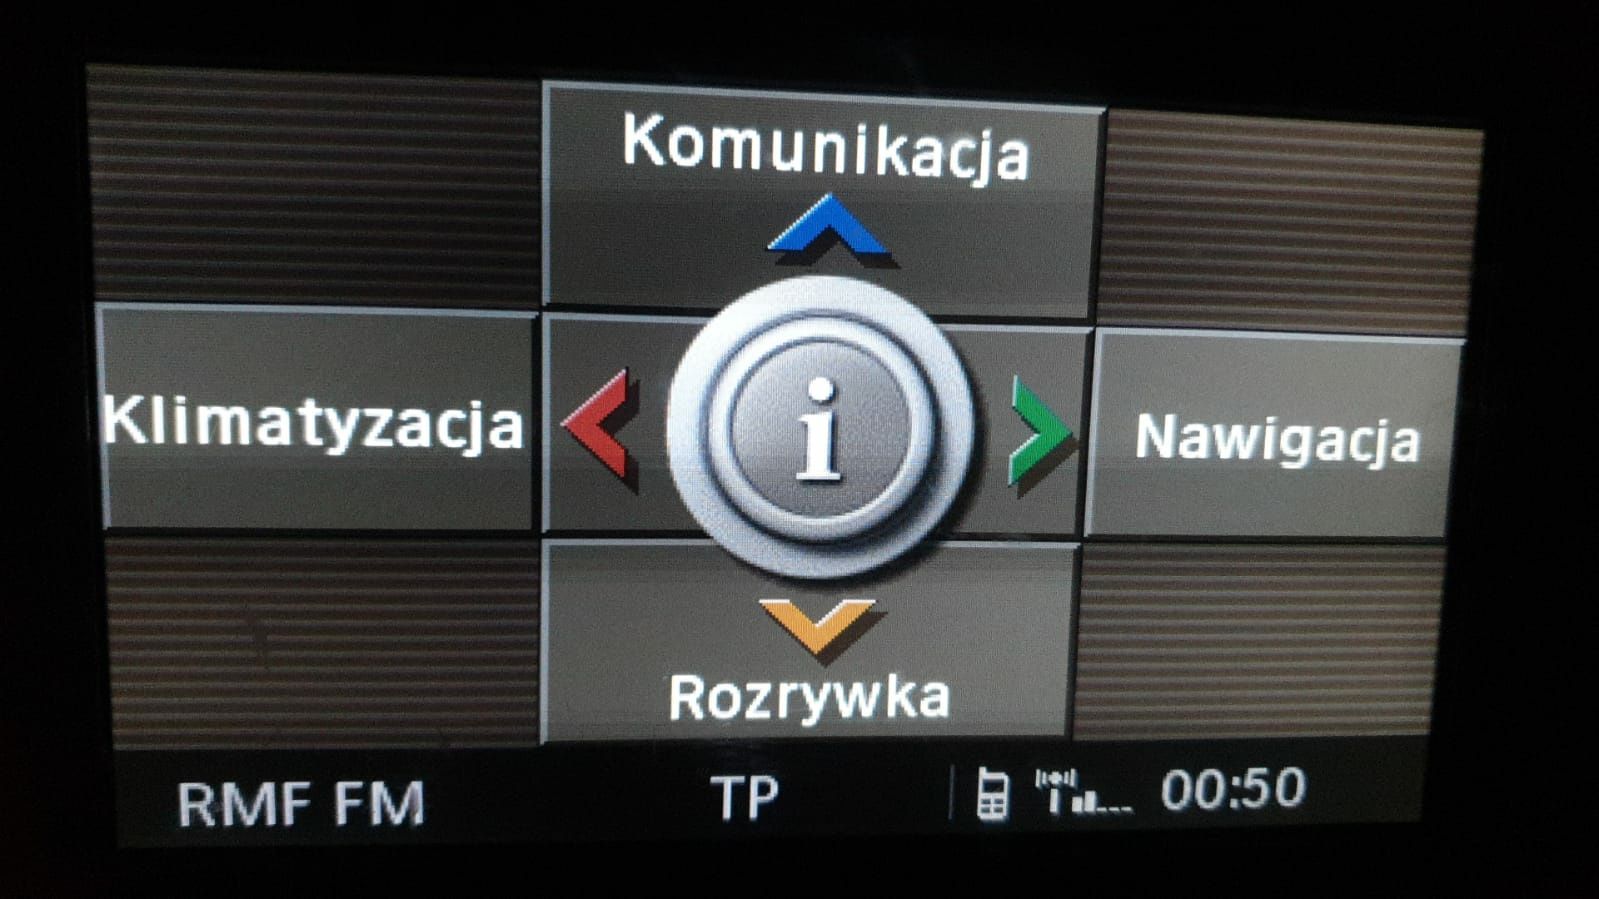 Polskie menu lektor MAPY Carplay Android Auto AUDI BMW VW Ford Lexus